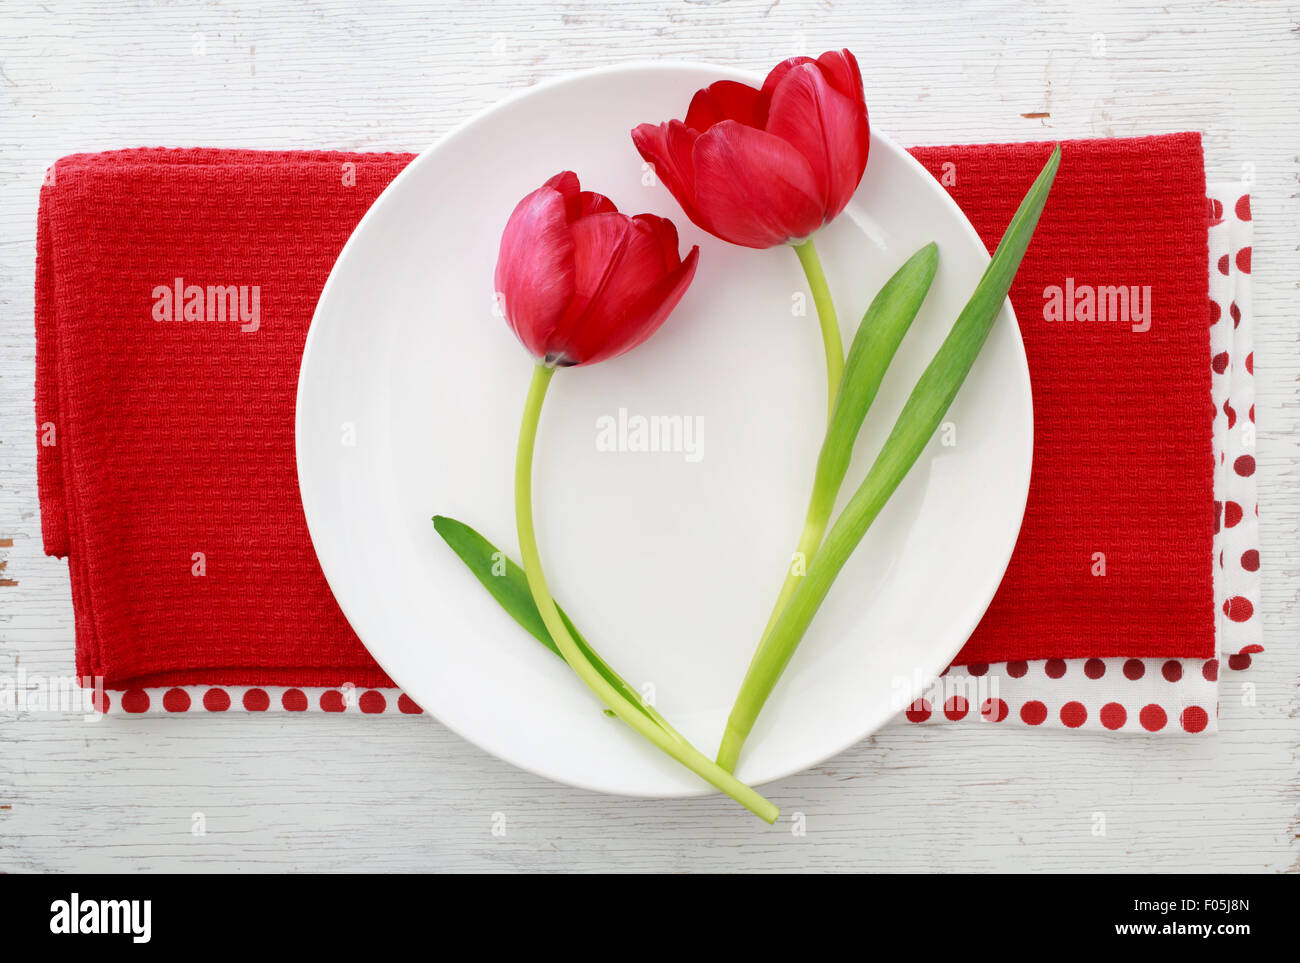 Deux tulipes rouges sur la plaque blanche sur des serviettes de table rouge Banque D'Images